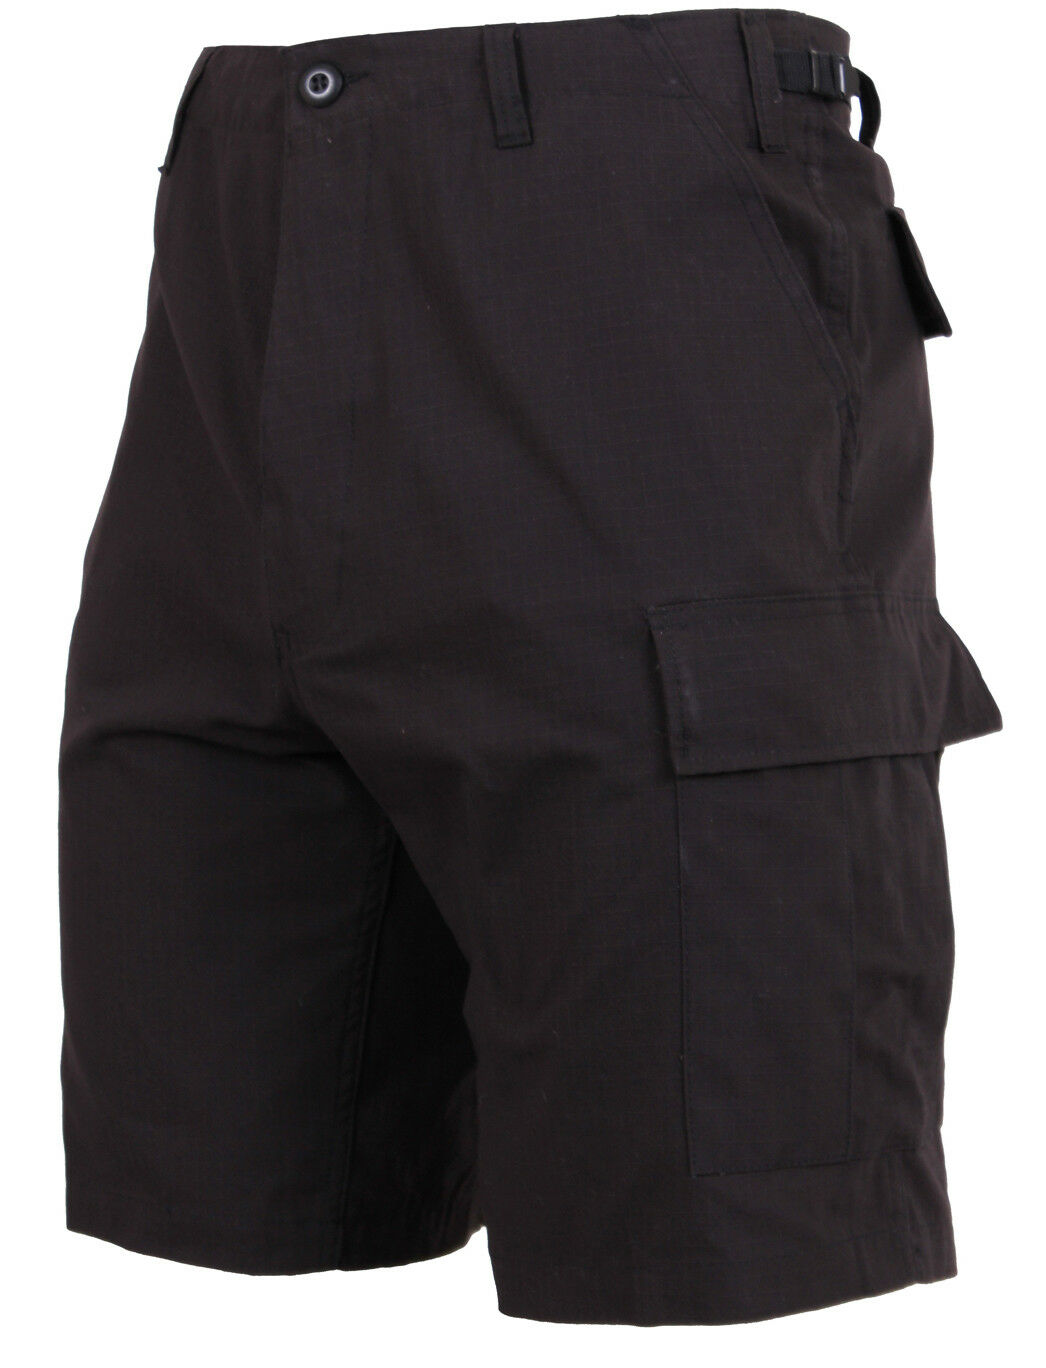 Rothco Tactical BDU Shorts - Black